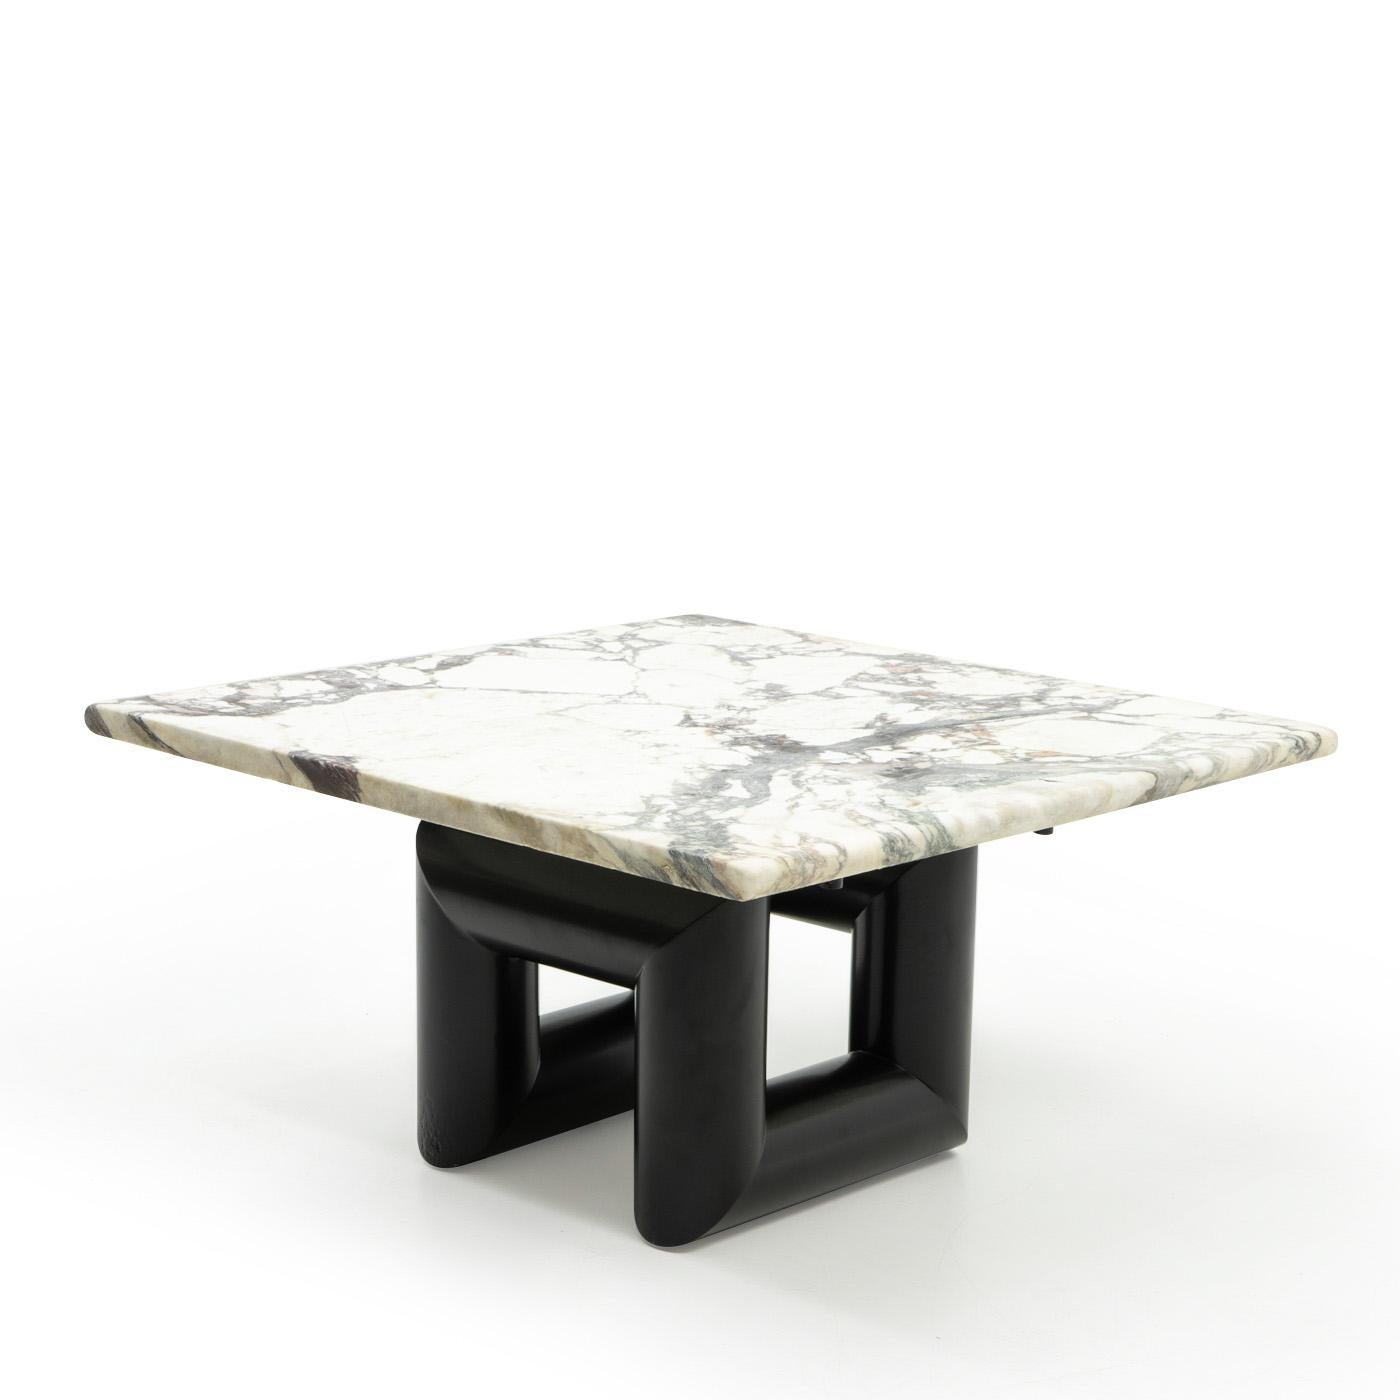 Table basse conçue sur mesure par Mario Botta, produite par Alias (Italie) pour le Ransila Building 1, Lugano, Suisse :

Cette table basse à plateau de marbre est une adaptation de la table de salle à manger Terzo (années 1980) produite en série et